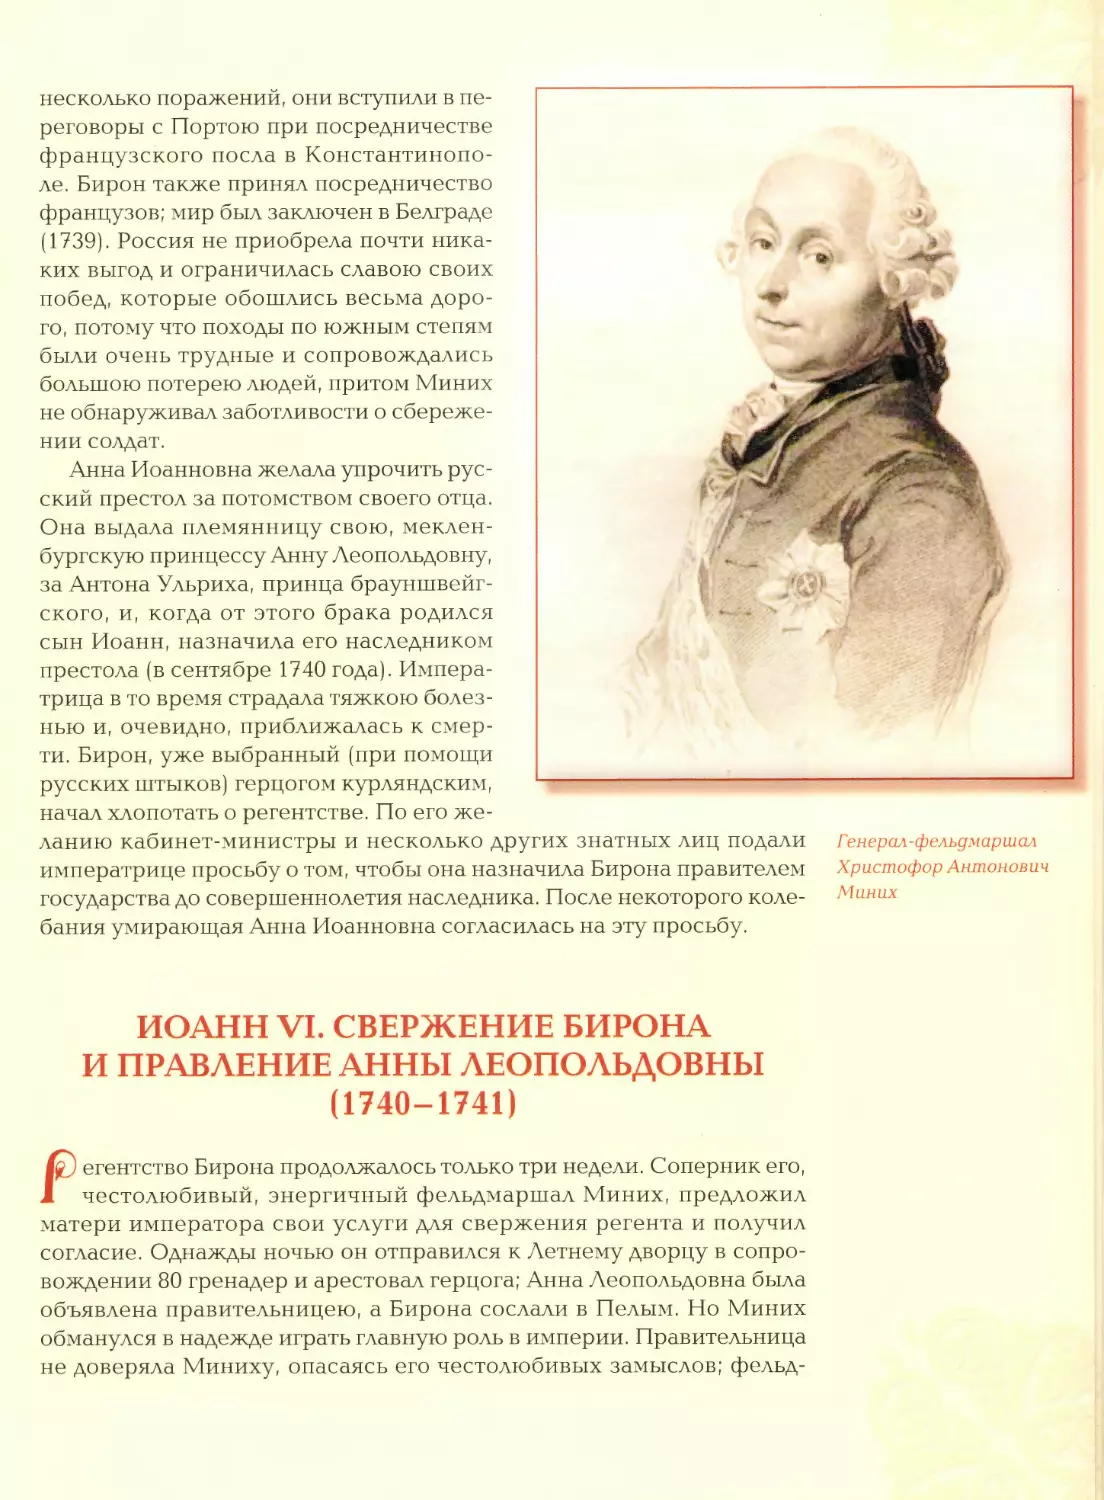 Иоанн VI. Свержение Бирона и правление Анны Леопольдовны (1740—1741